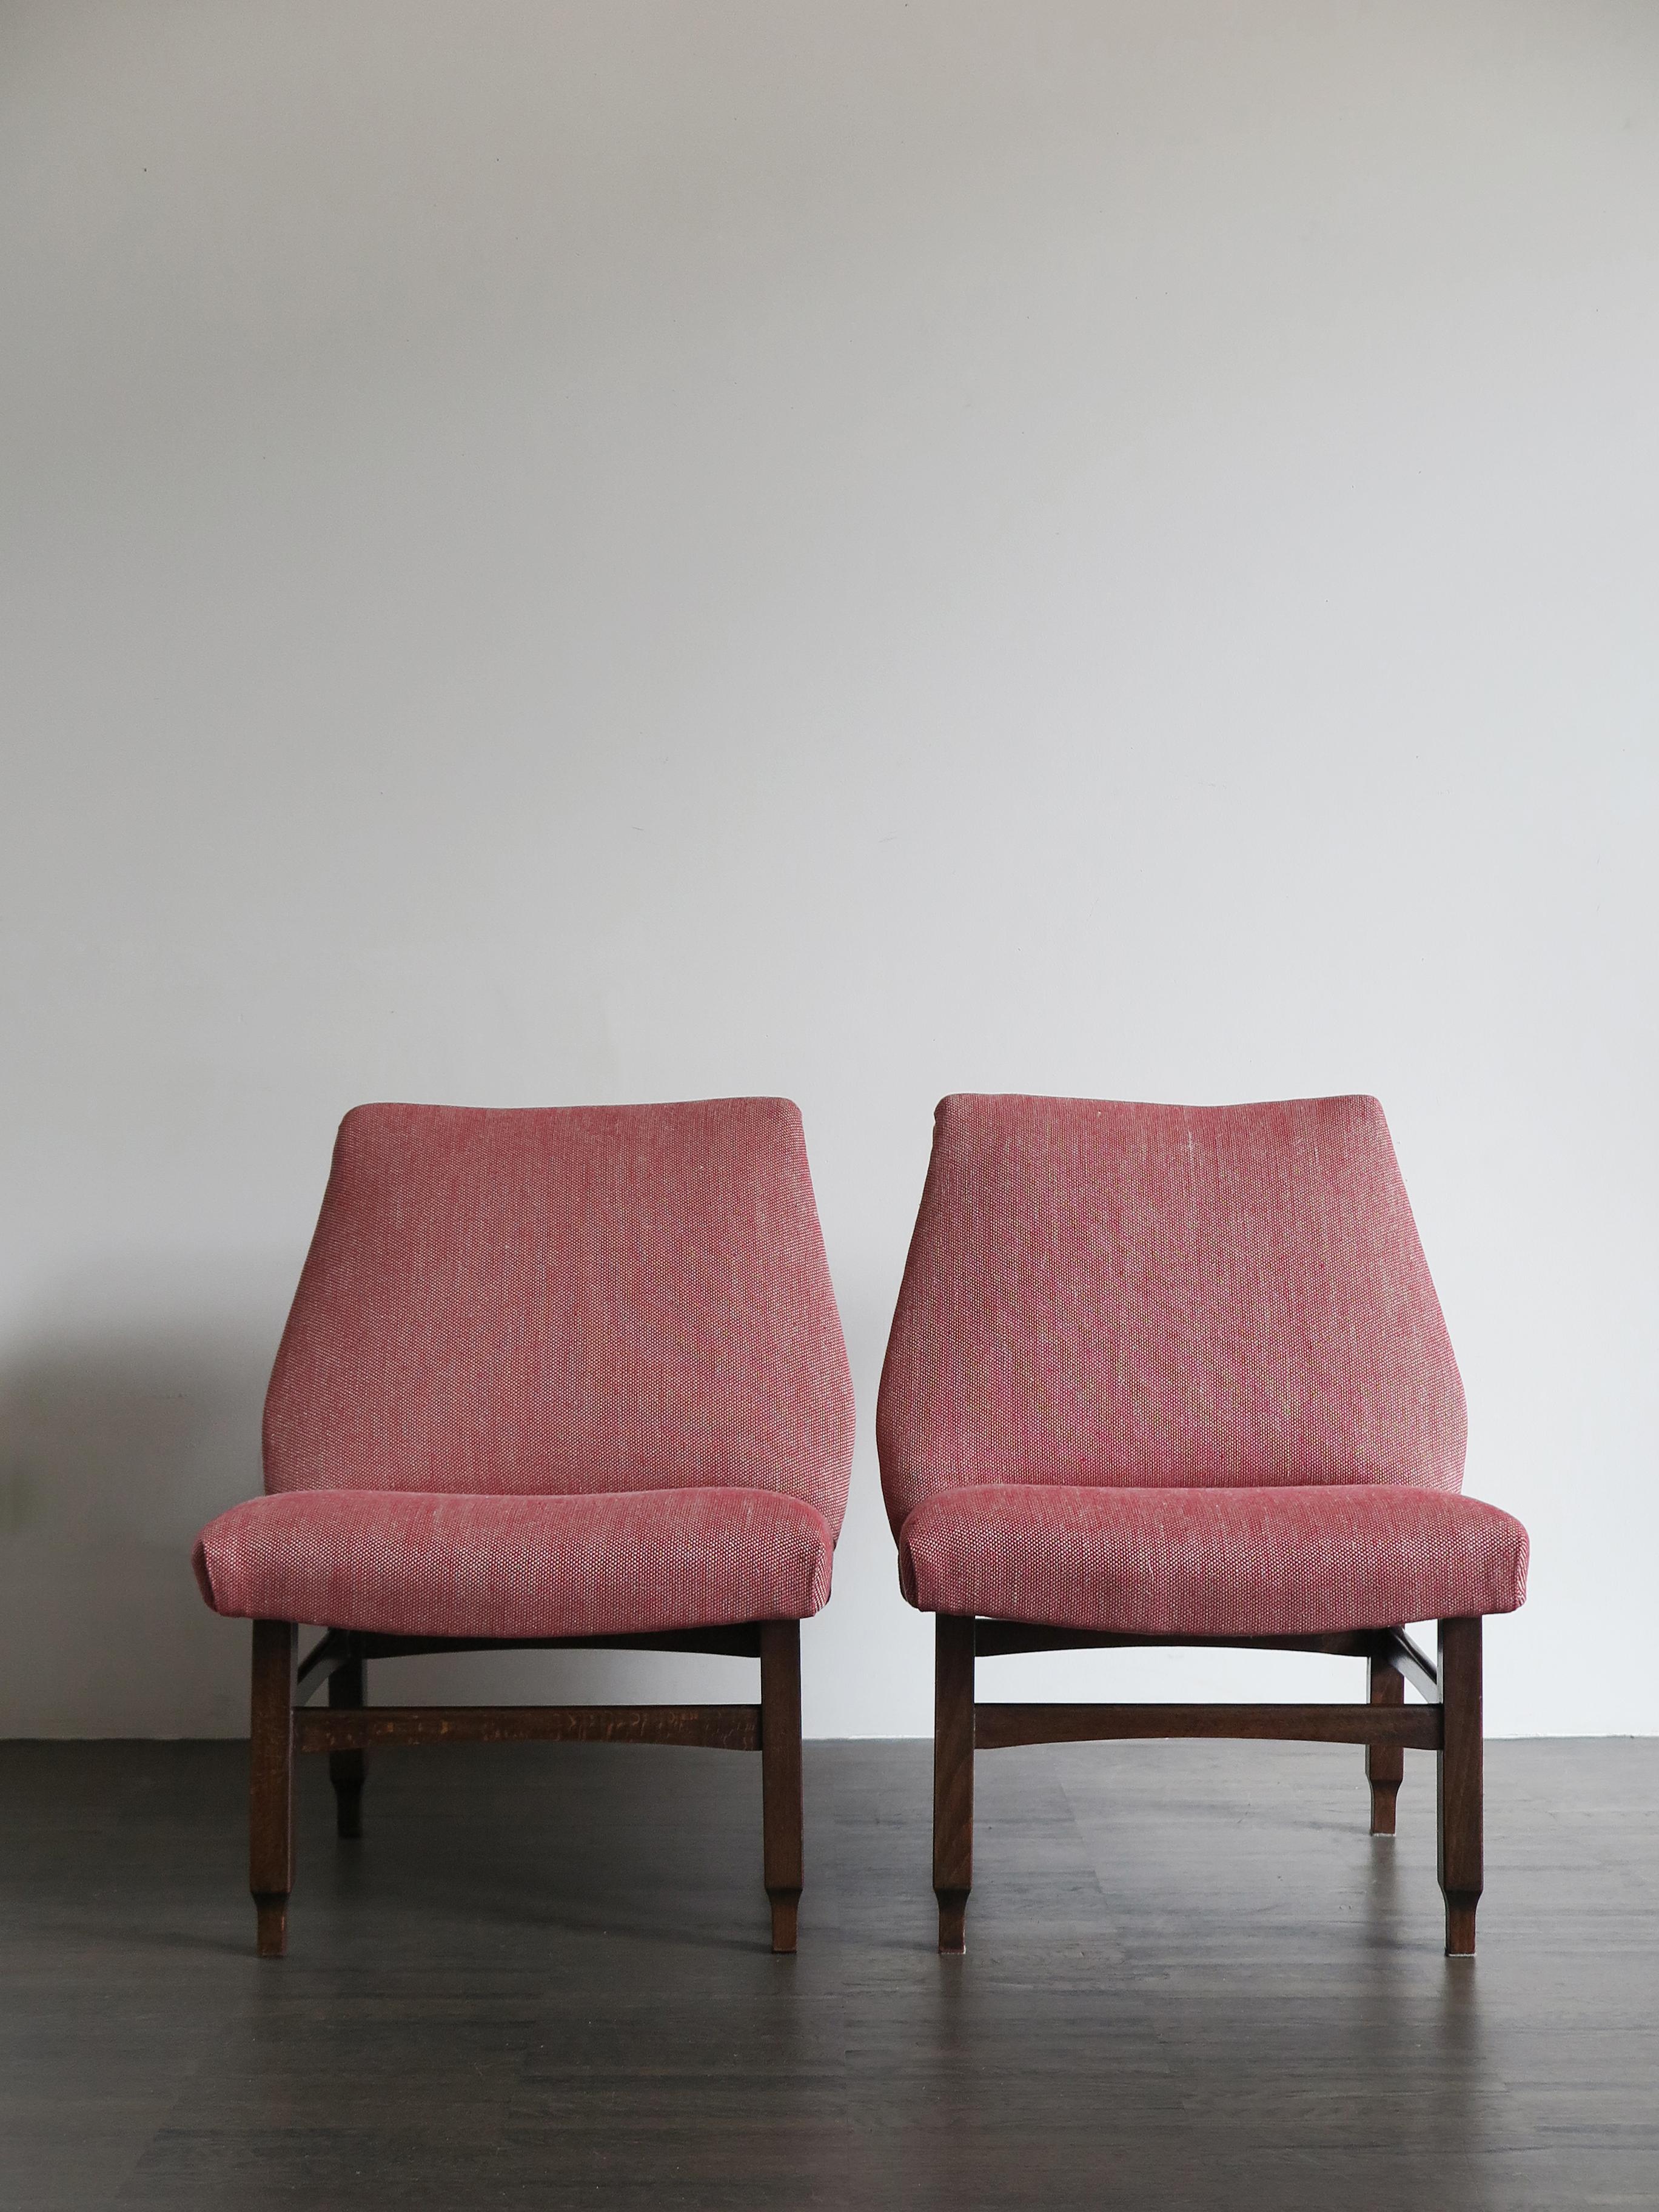 Satz von zwei italienischen Mid-Century Modern Design Sesseln mit Beinen Struktur in Massivholz und mit neuer Polsterung und Polsterung, 1950er Jahre.
Sehr guter alter Zustand.